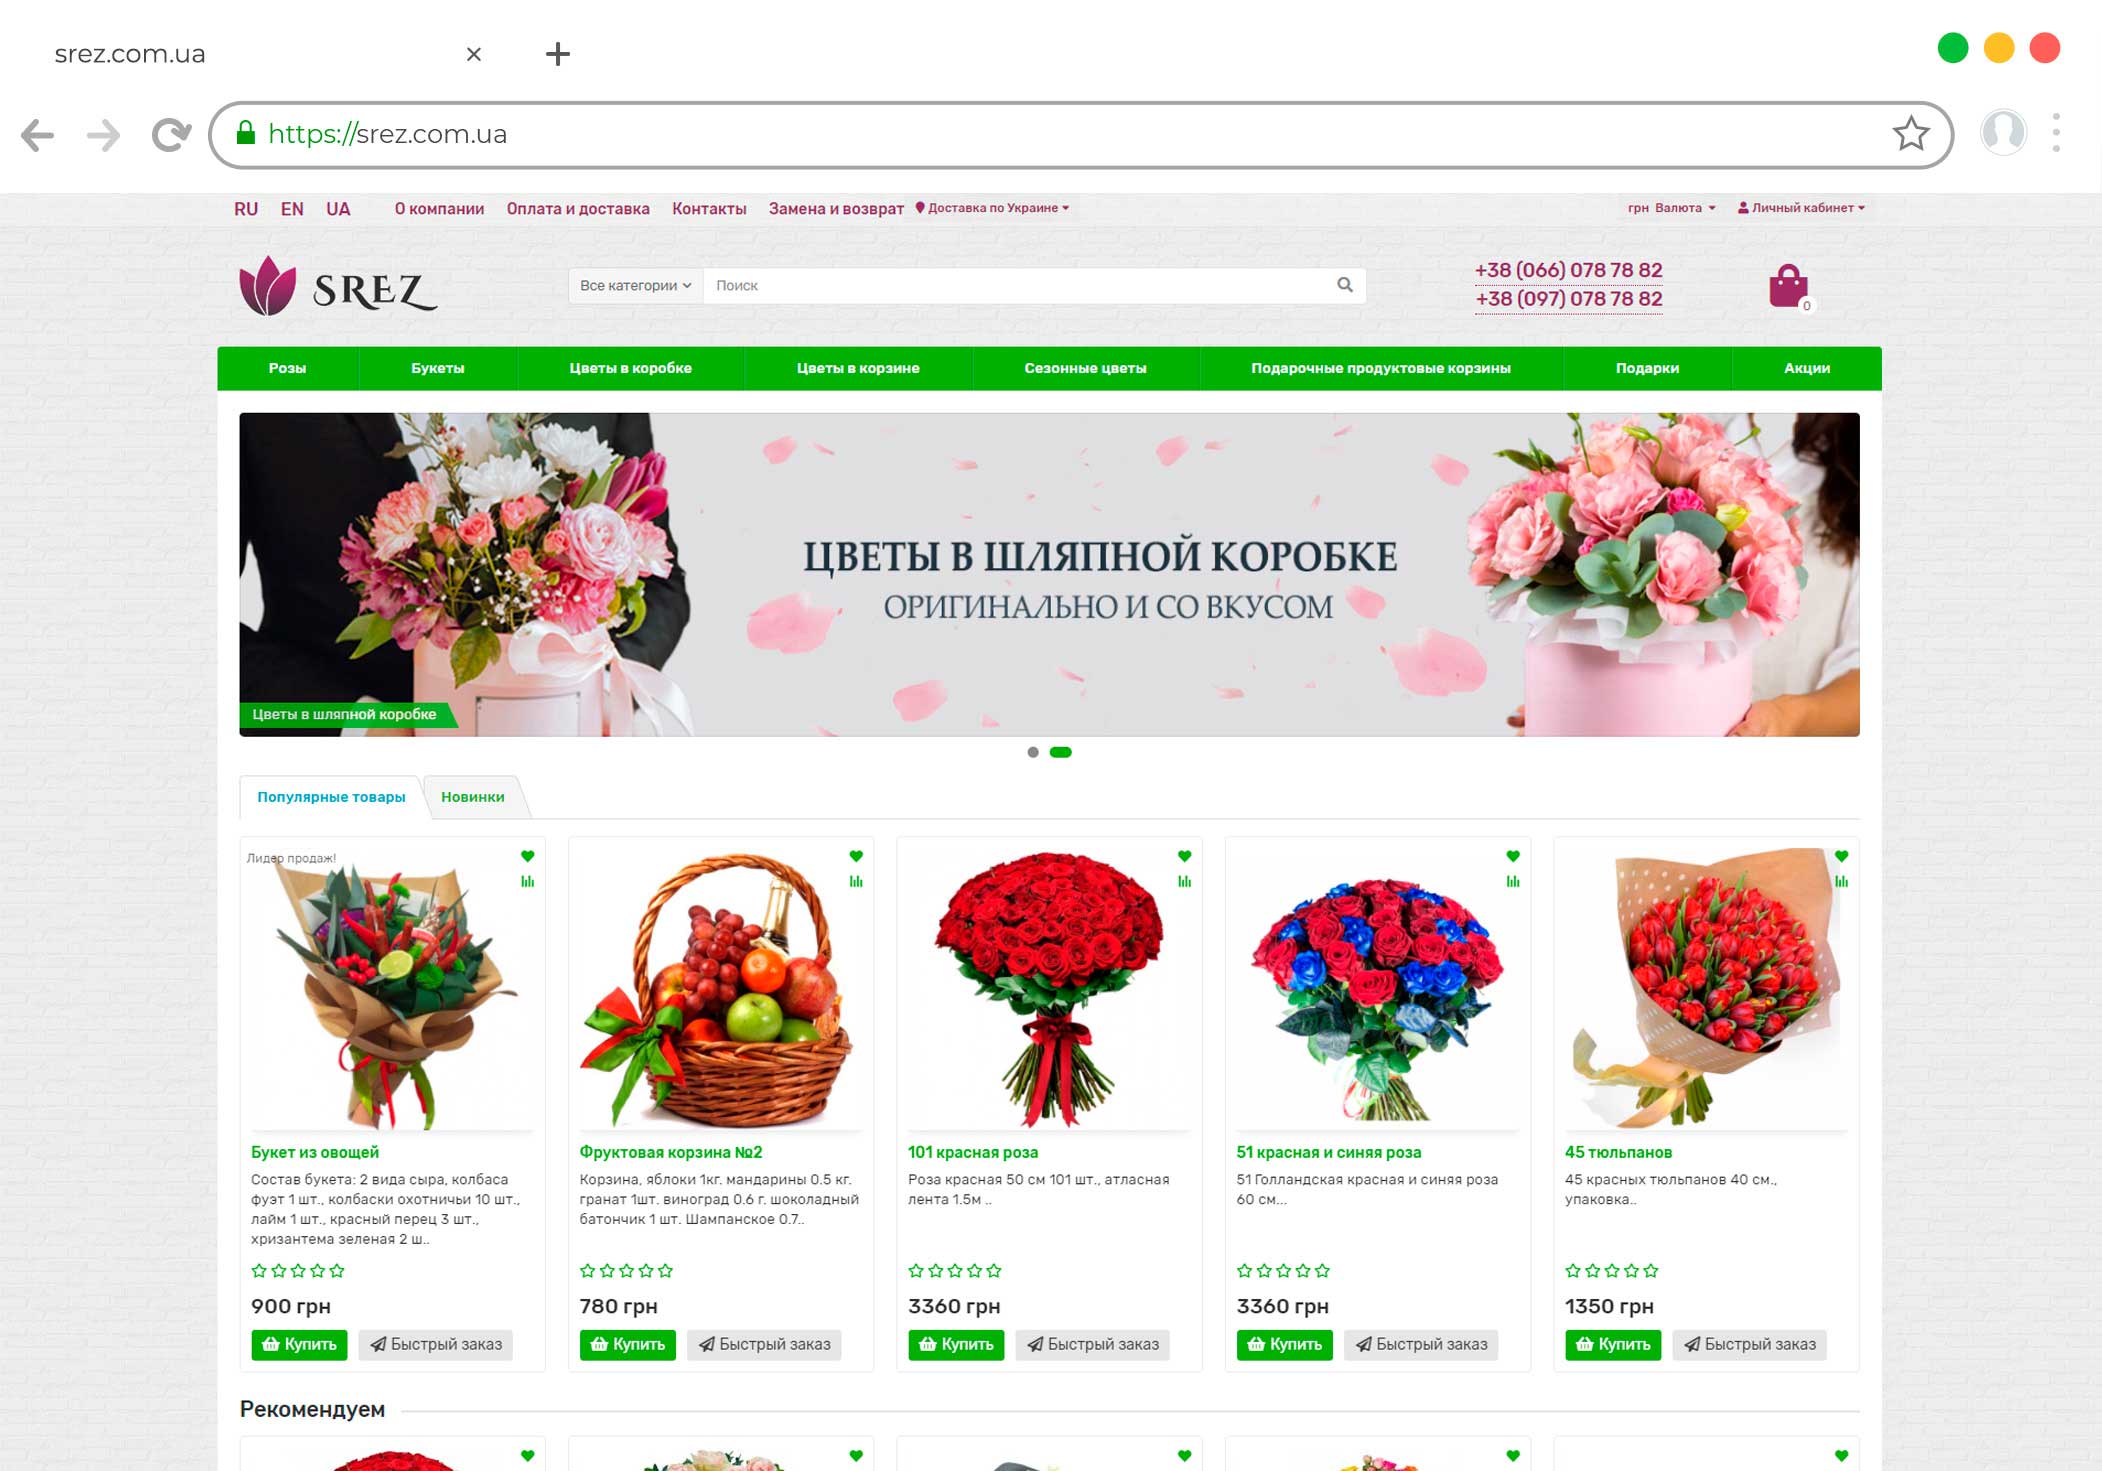 Разработка интернет магазина доставки цветов srez.com.ua